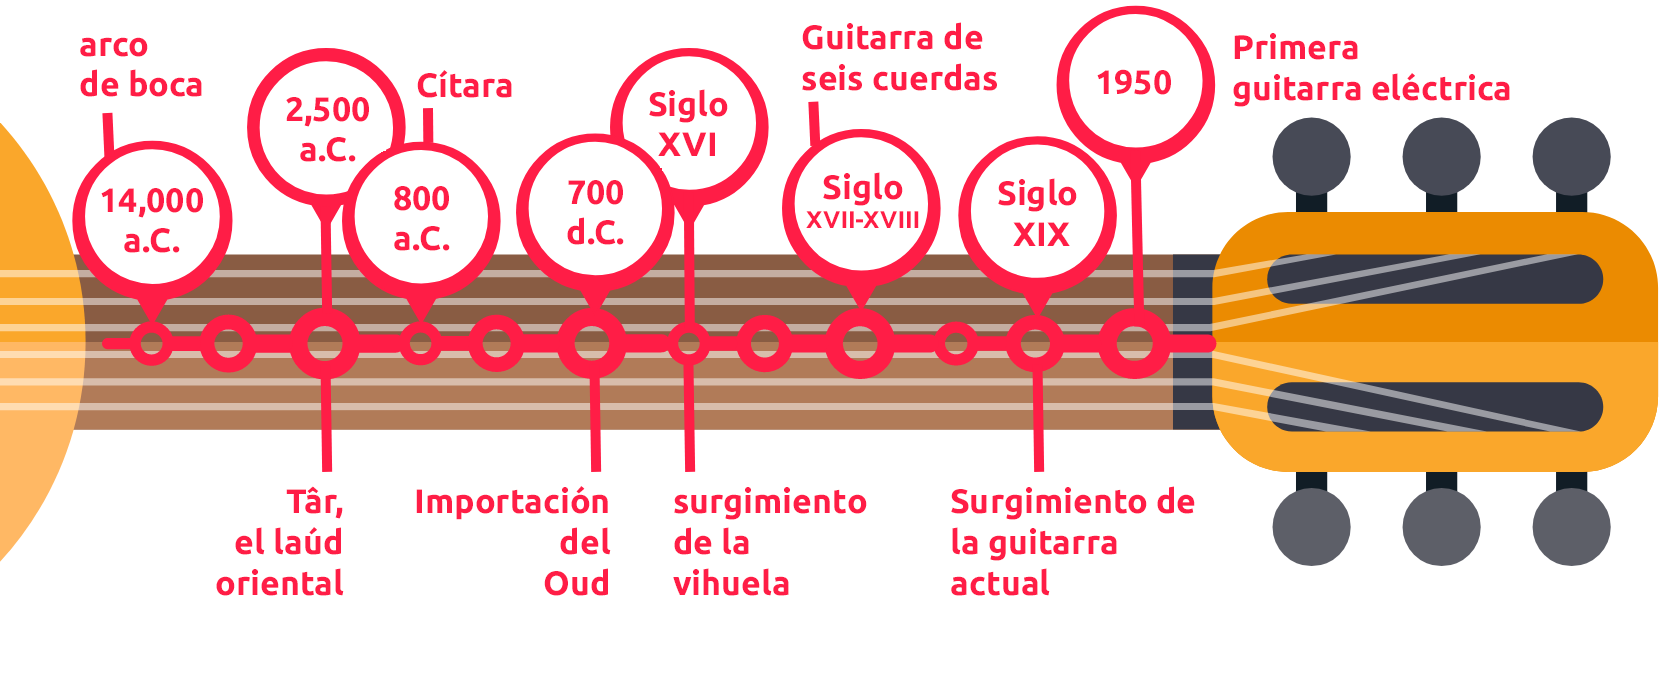 La historia de la guitarra en una línea de tiempo